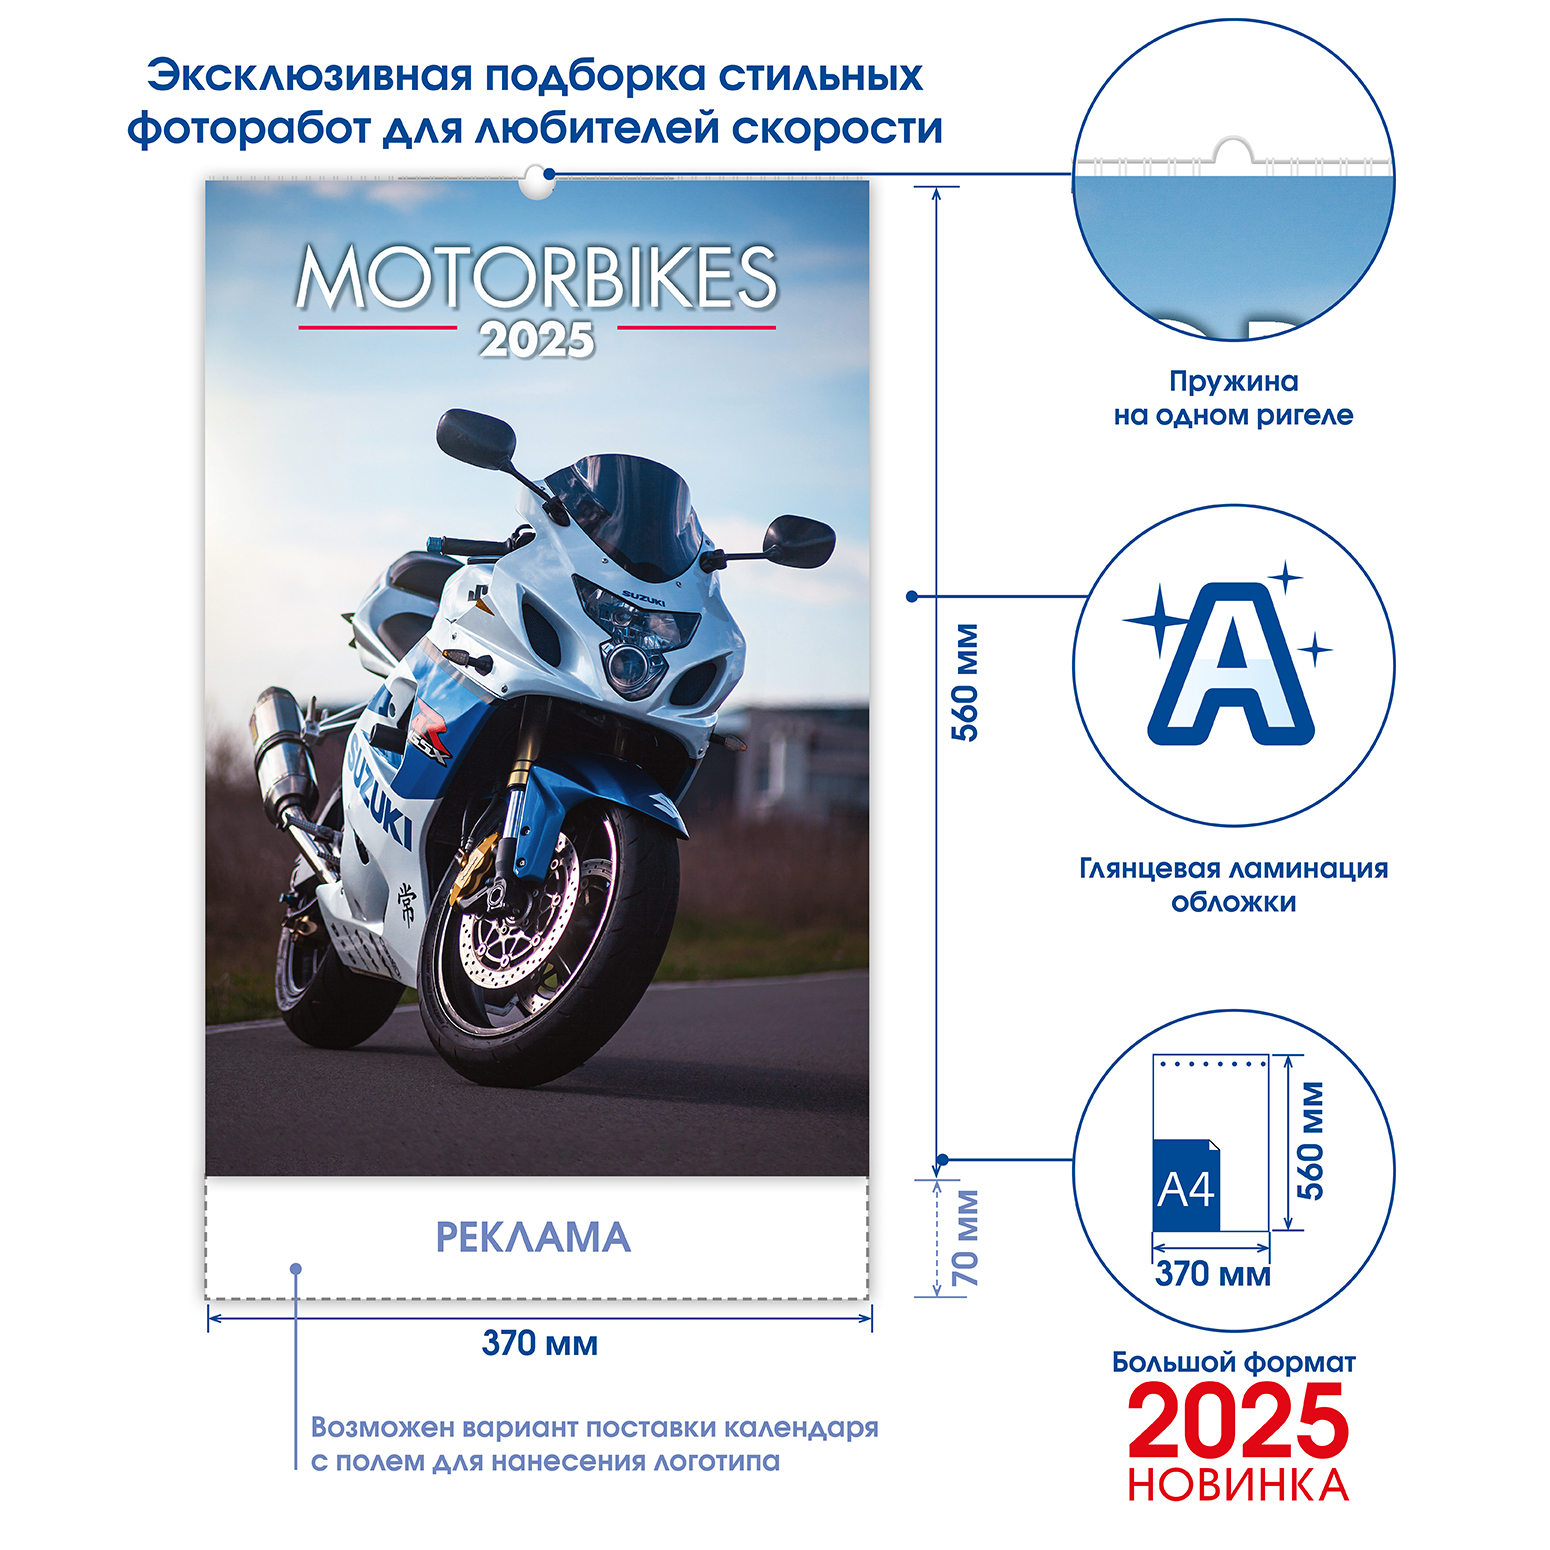 motorbikes (Мотоциклы) 2025